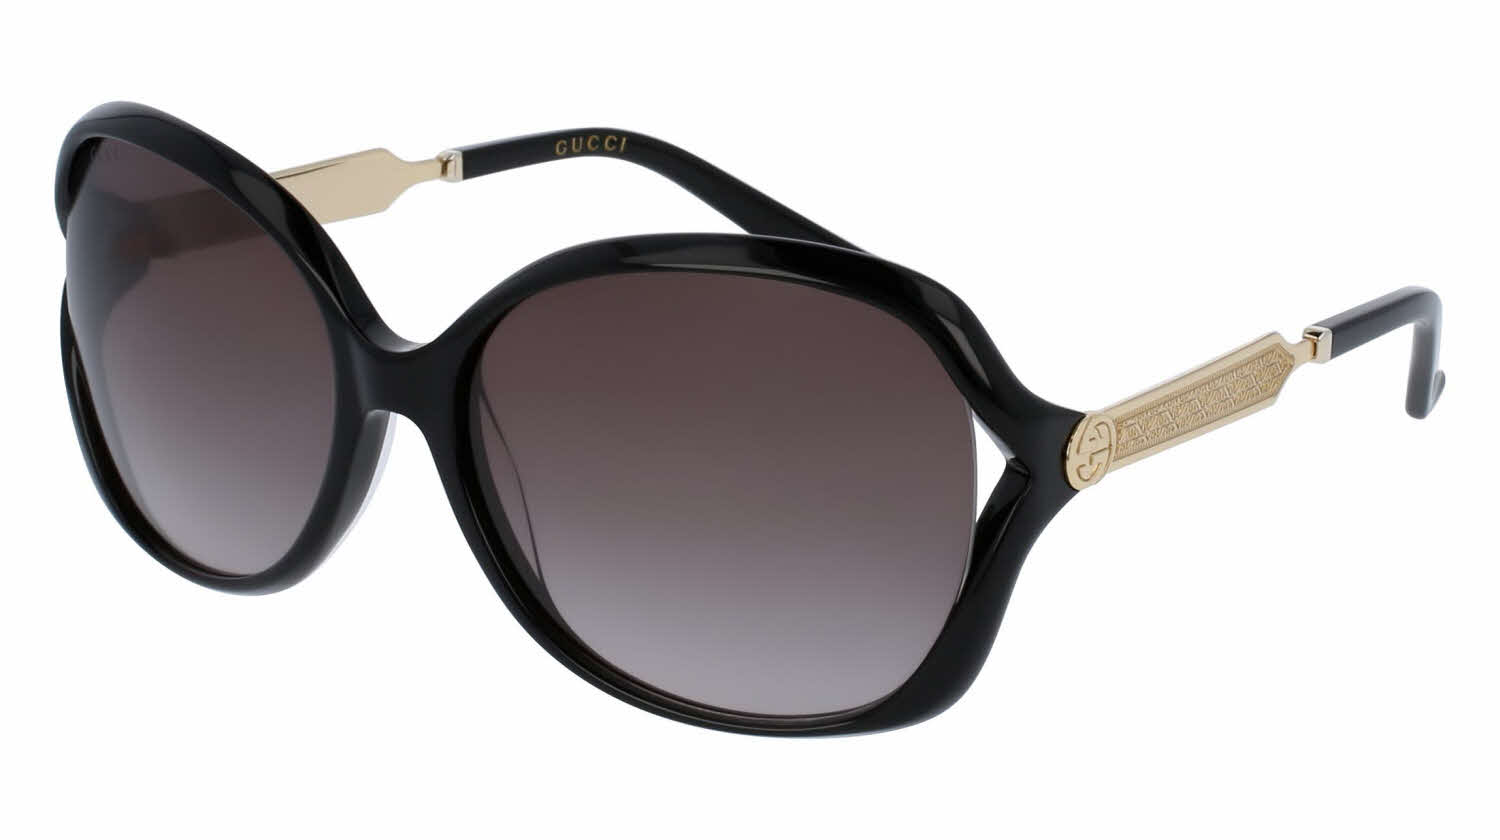 Gucci GG0076S Sunglasses